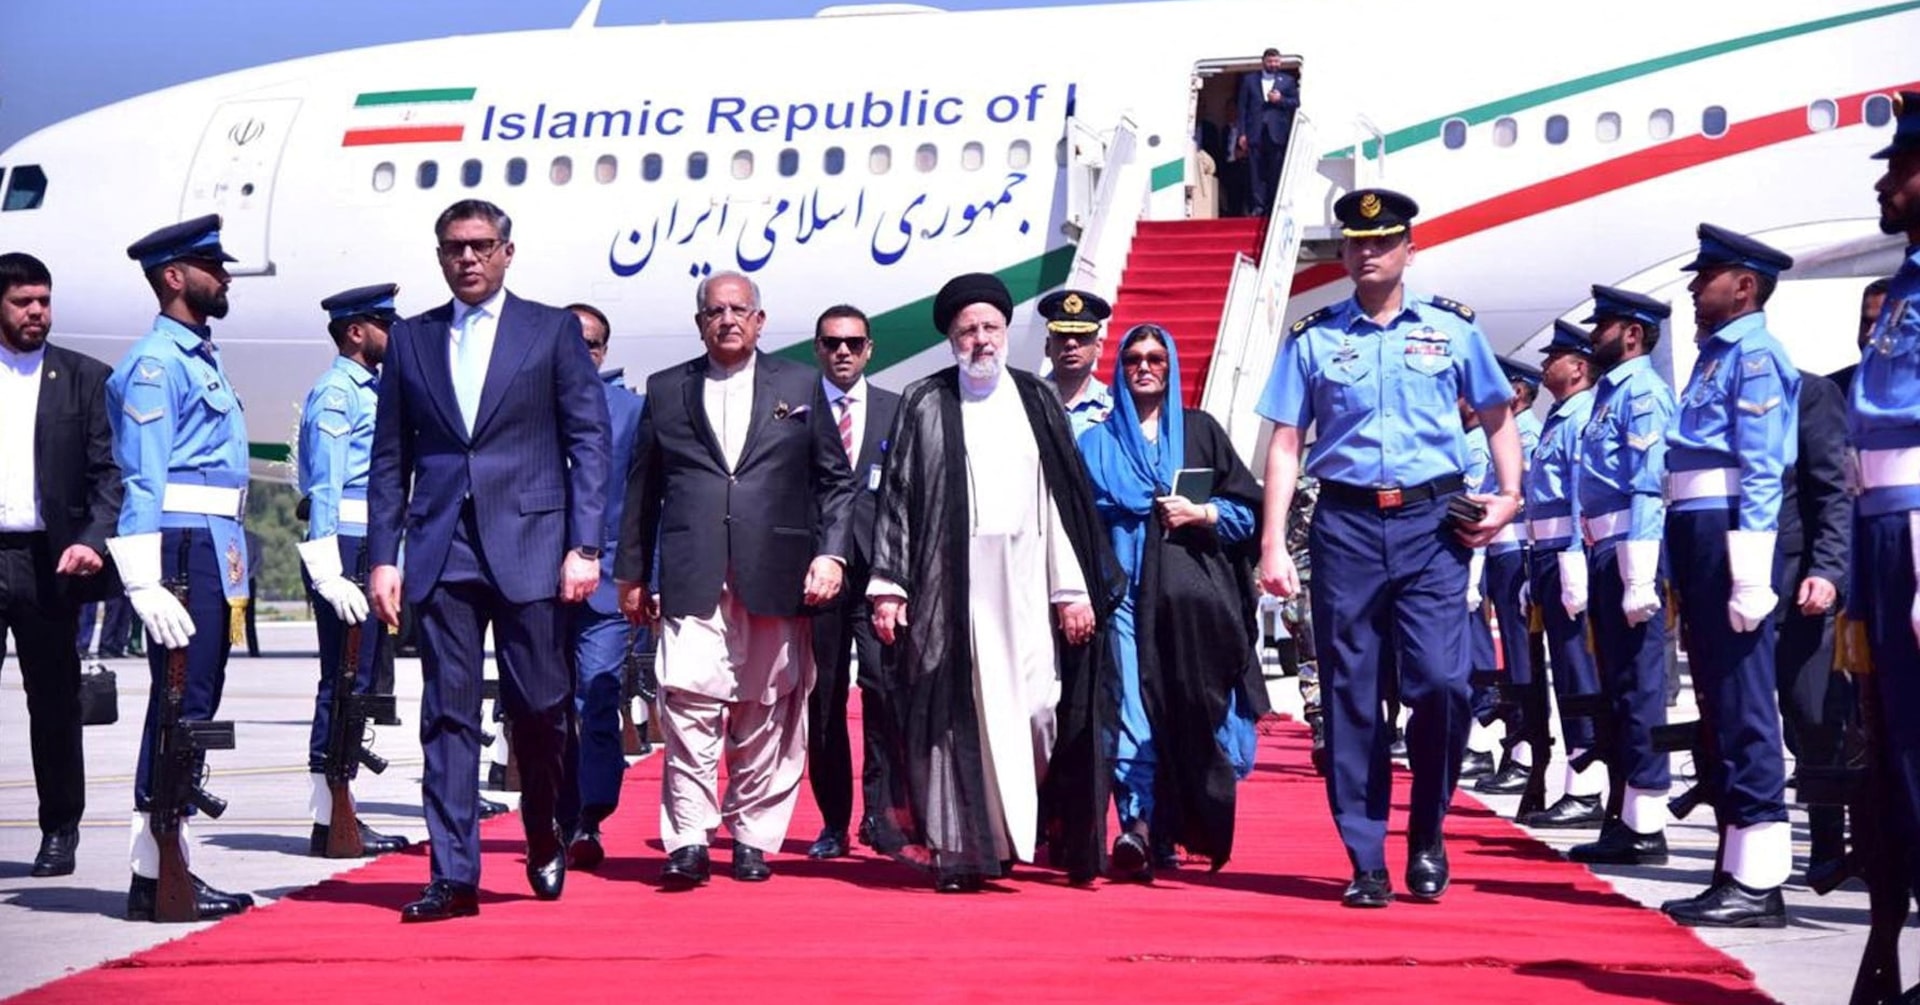 イラン大統領がパキスタン訪問、年間100億ドルへ貿易拡大目指す